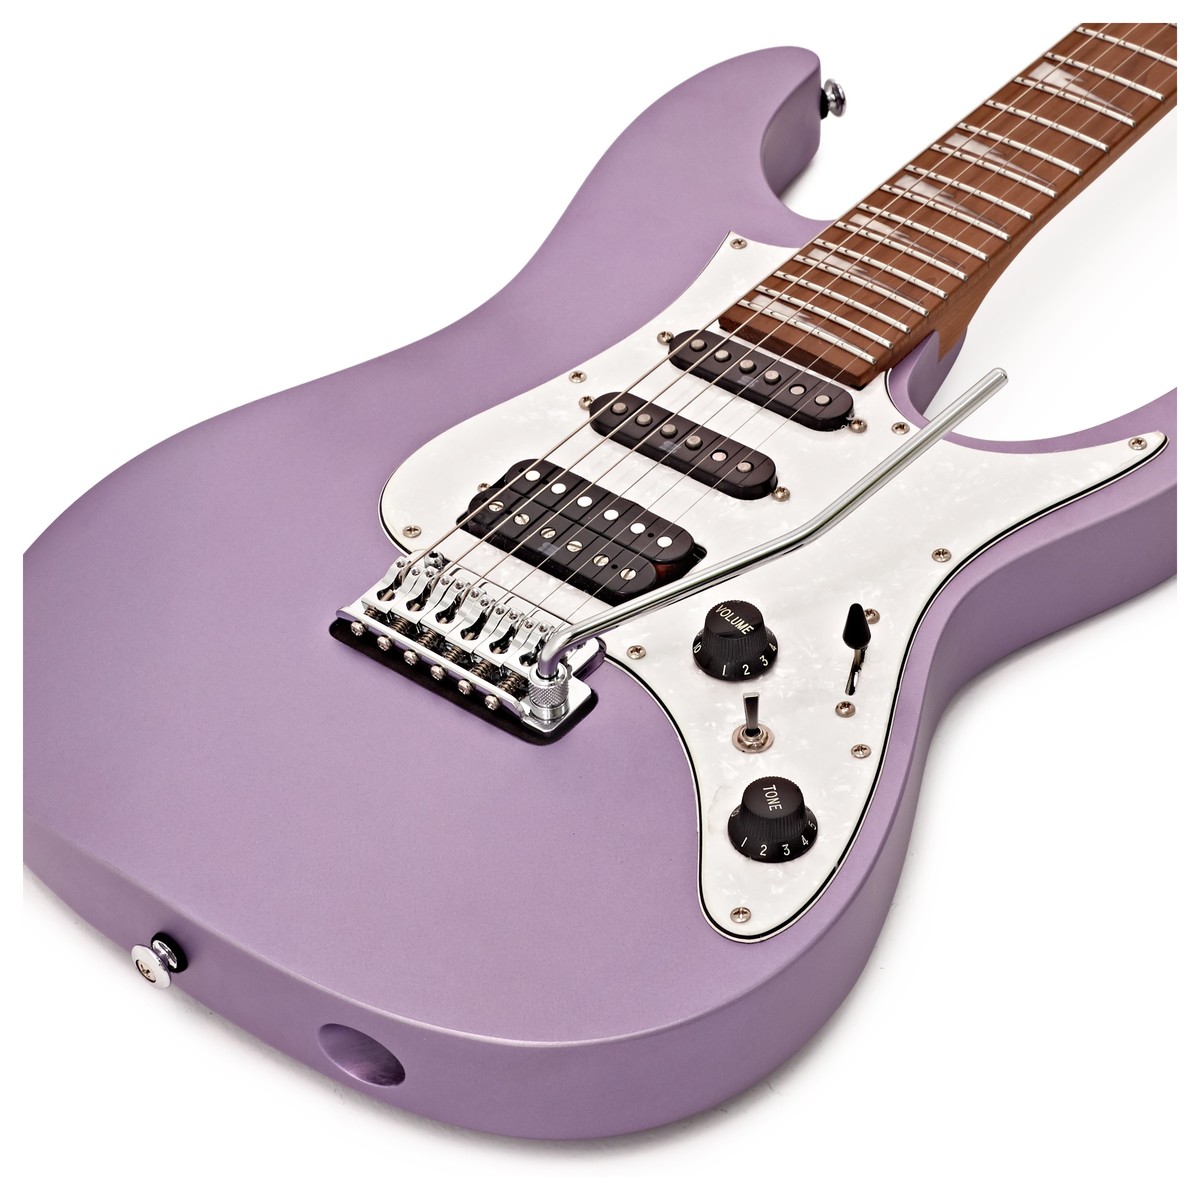 Ibanez Mario Camarena Mar10 Lmm Premium Signature Hss Trem Mn +housse - Lavender Metallic Matte - Elektrische gitaar in Str-vorm - Variation 3